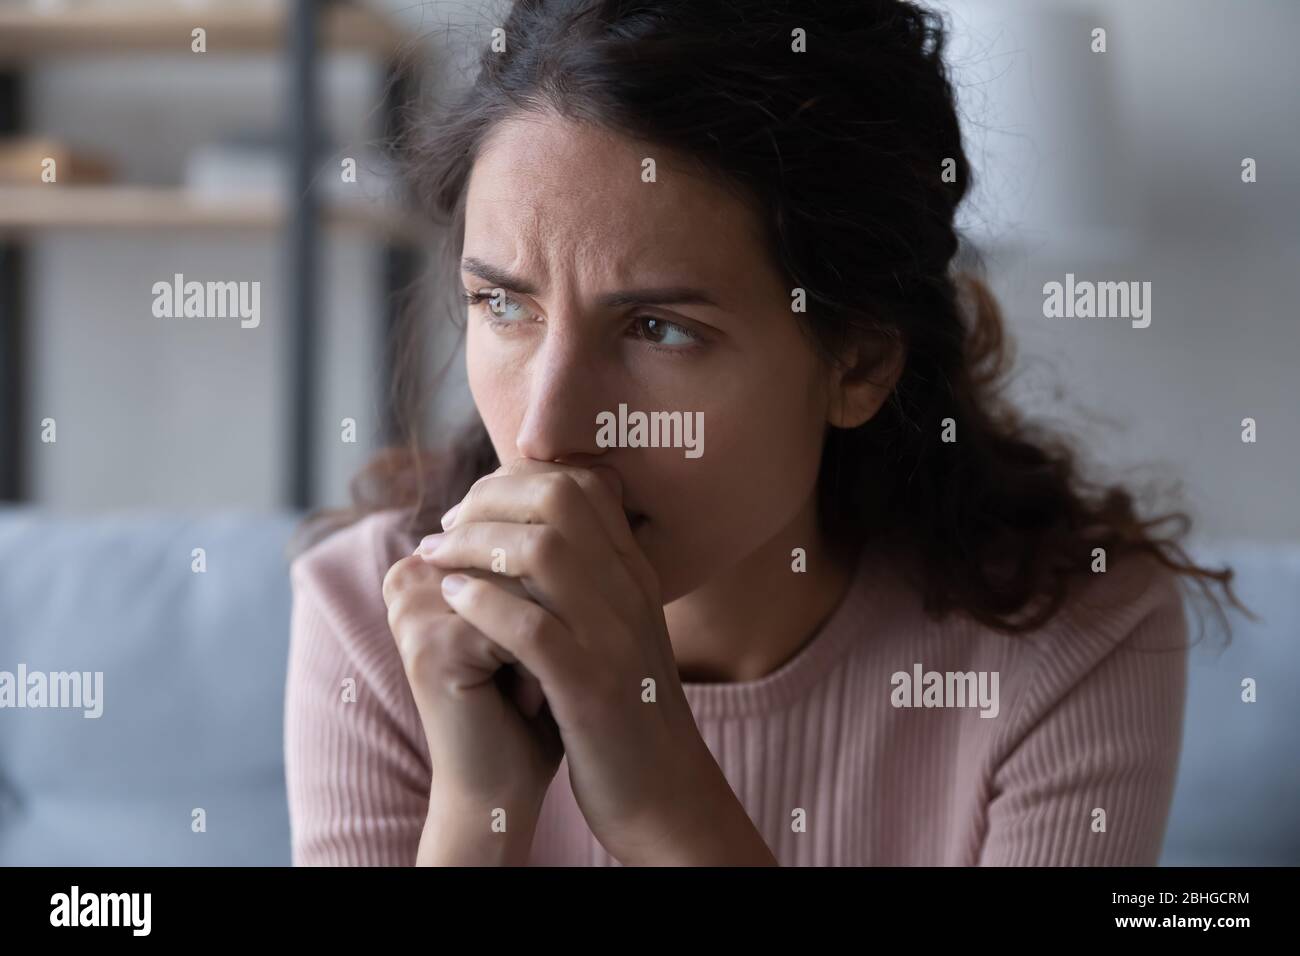 Frustrierte gestresste junge Frau, die an schwierige Entscheidung denkt. Stockfoto